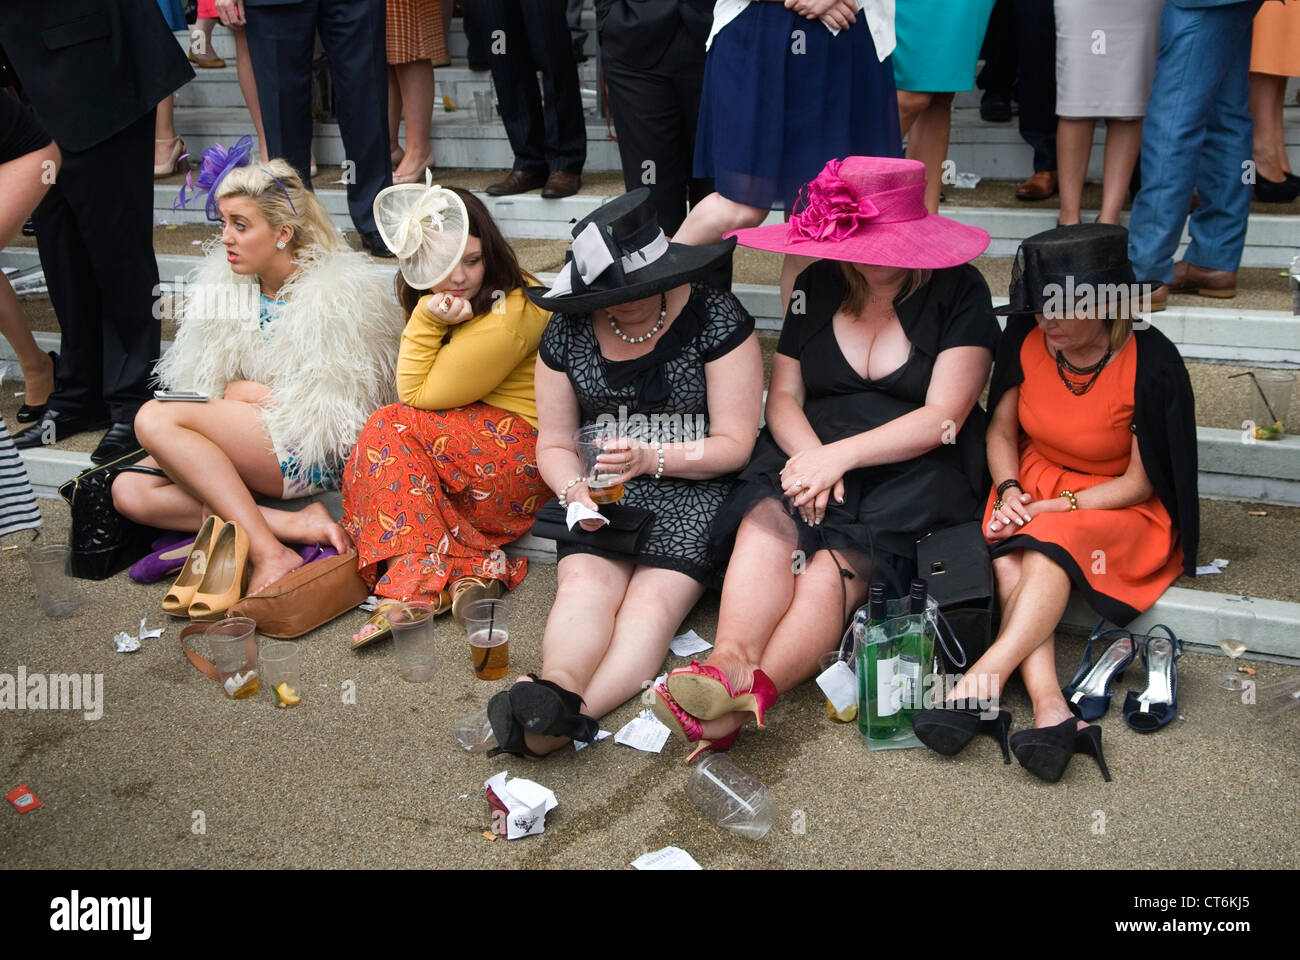 Stanchi esausti, dolori ai piedi, usurati, scarpe scomode, gruppo di donne sedute a guardare i loro piedi. 2012 2010S UK HOMER SYKES Foto Stock